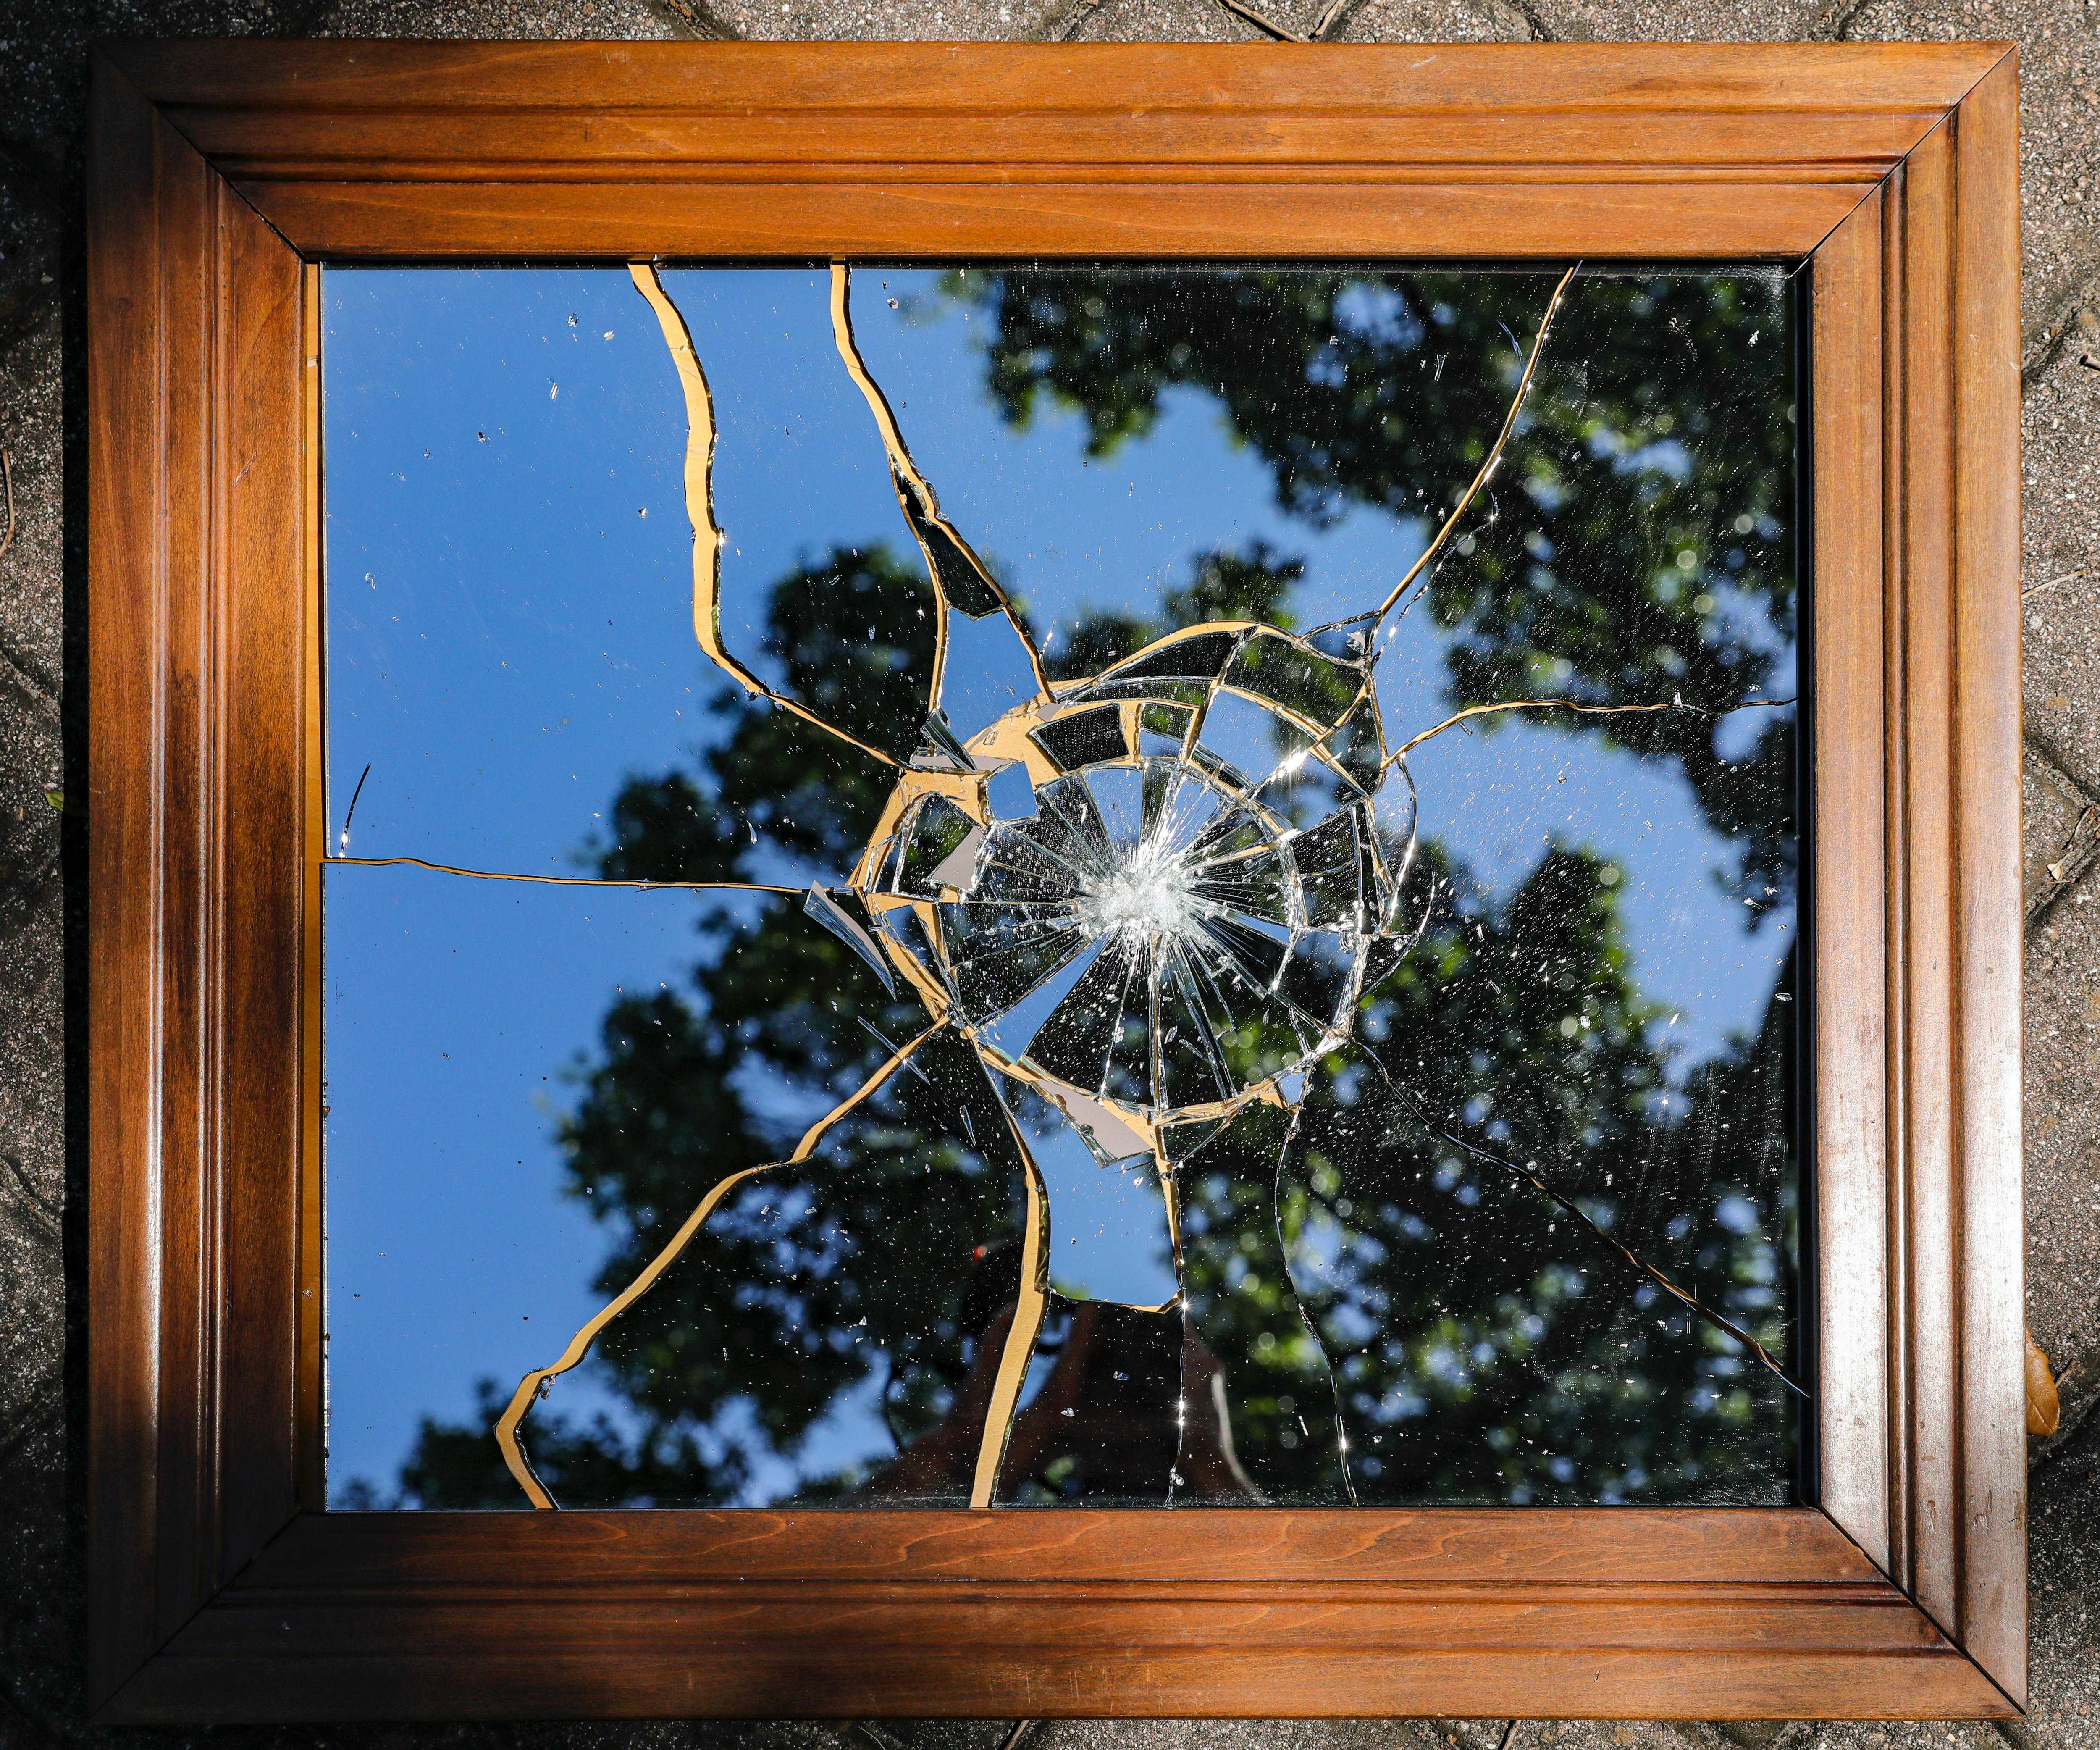 Разбитое зеркало. Треснутое зеркало. Разбитое зеркало в шкафу. Разбитое зеркало примета. Видеть разбитое зеркало